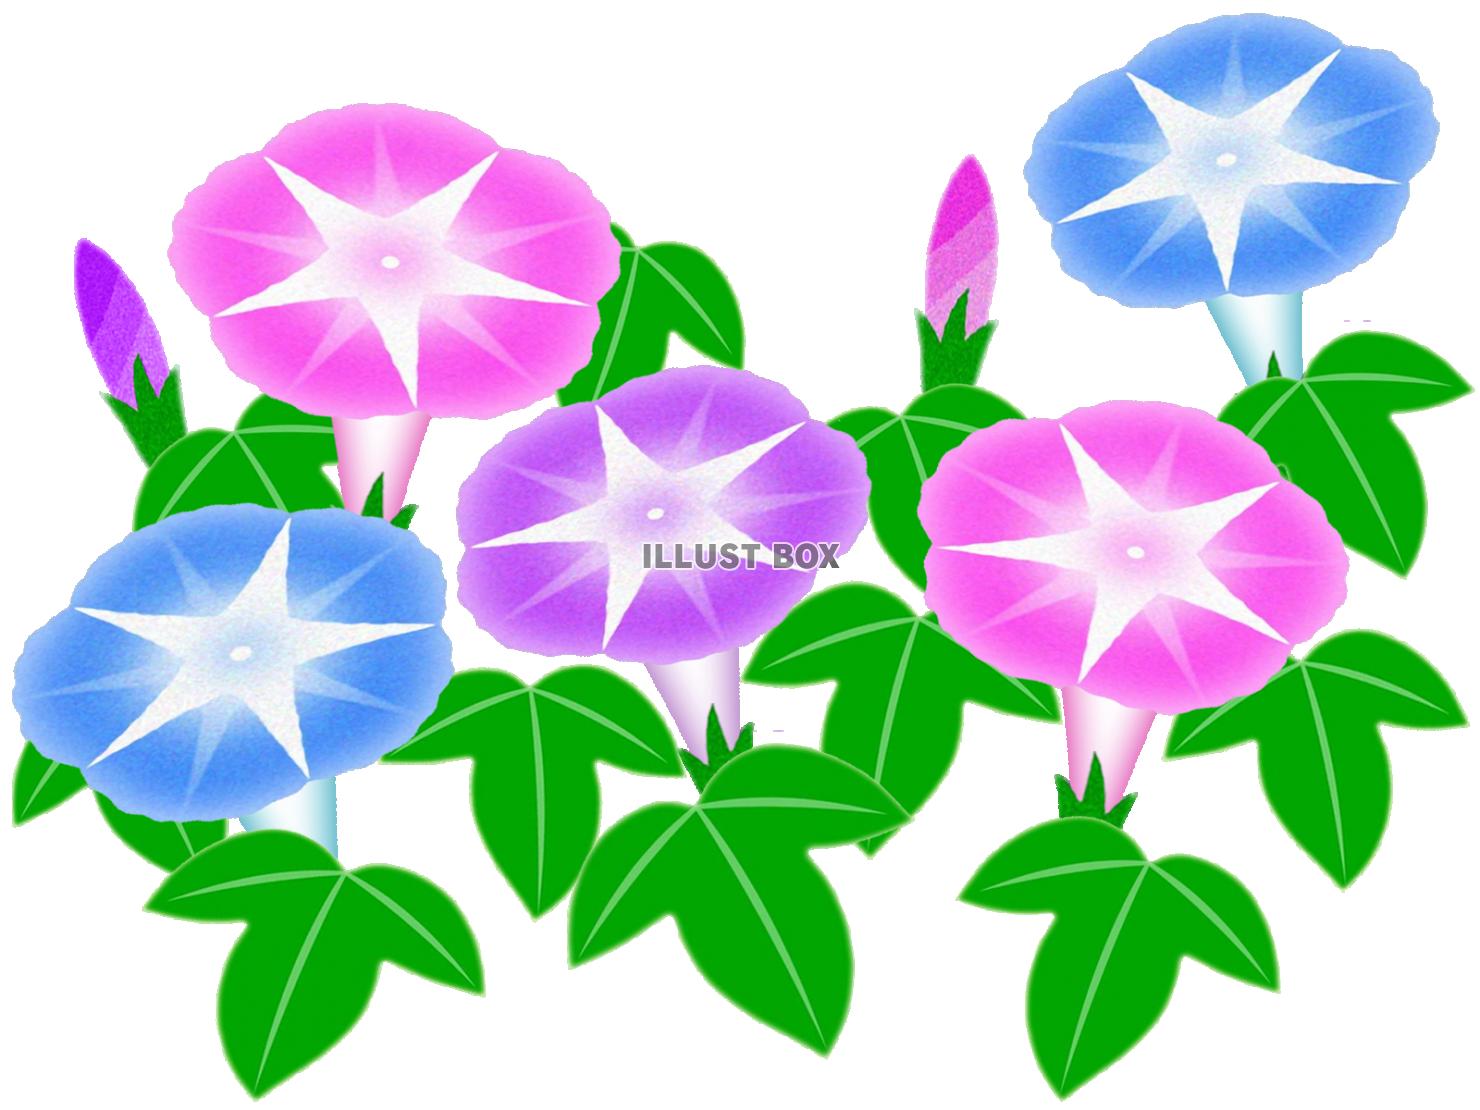 朝顔のお花模様壁紙画像シンプル背景素材イラストpng透過